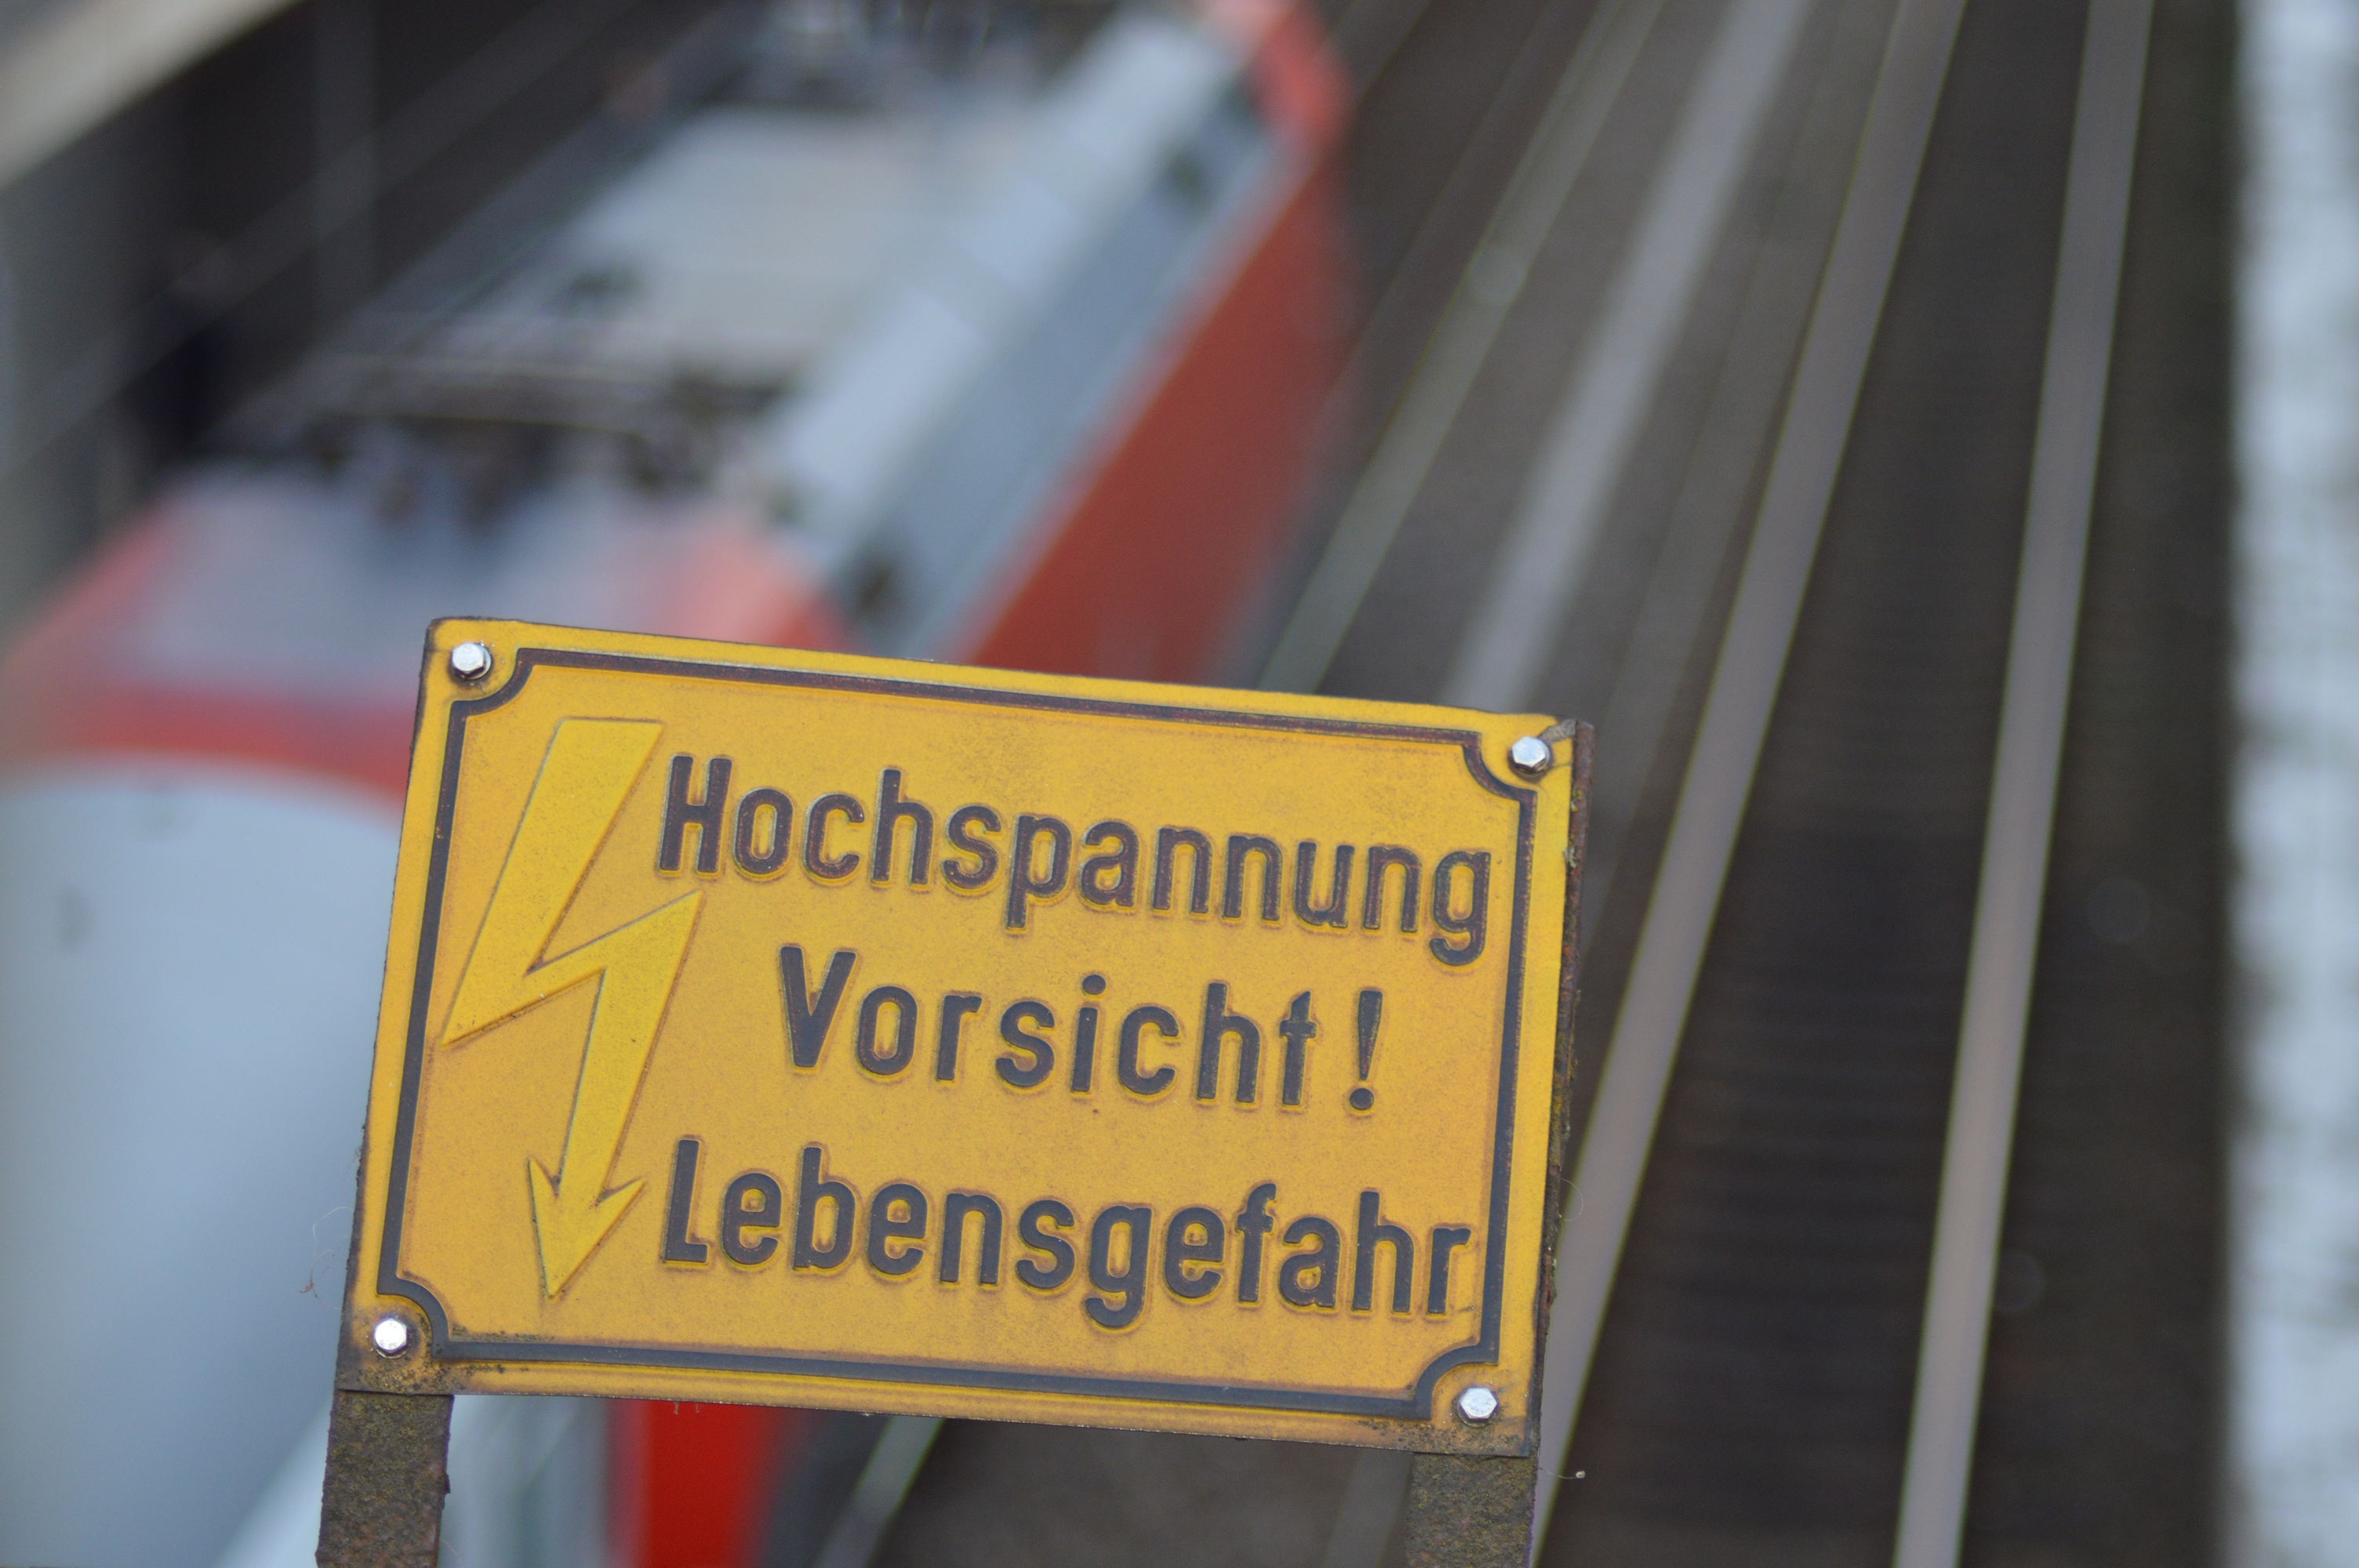 Symbolbild: Warnhinweis über der Oberleitung in einem Bahnhof. In hintergrund fährt ein Zug vorbei. (Foto: © Bahnblogstelle)